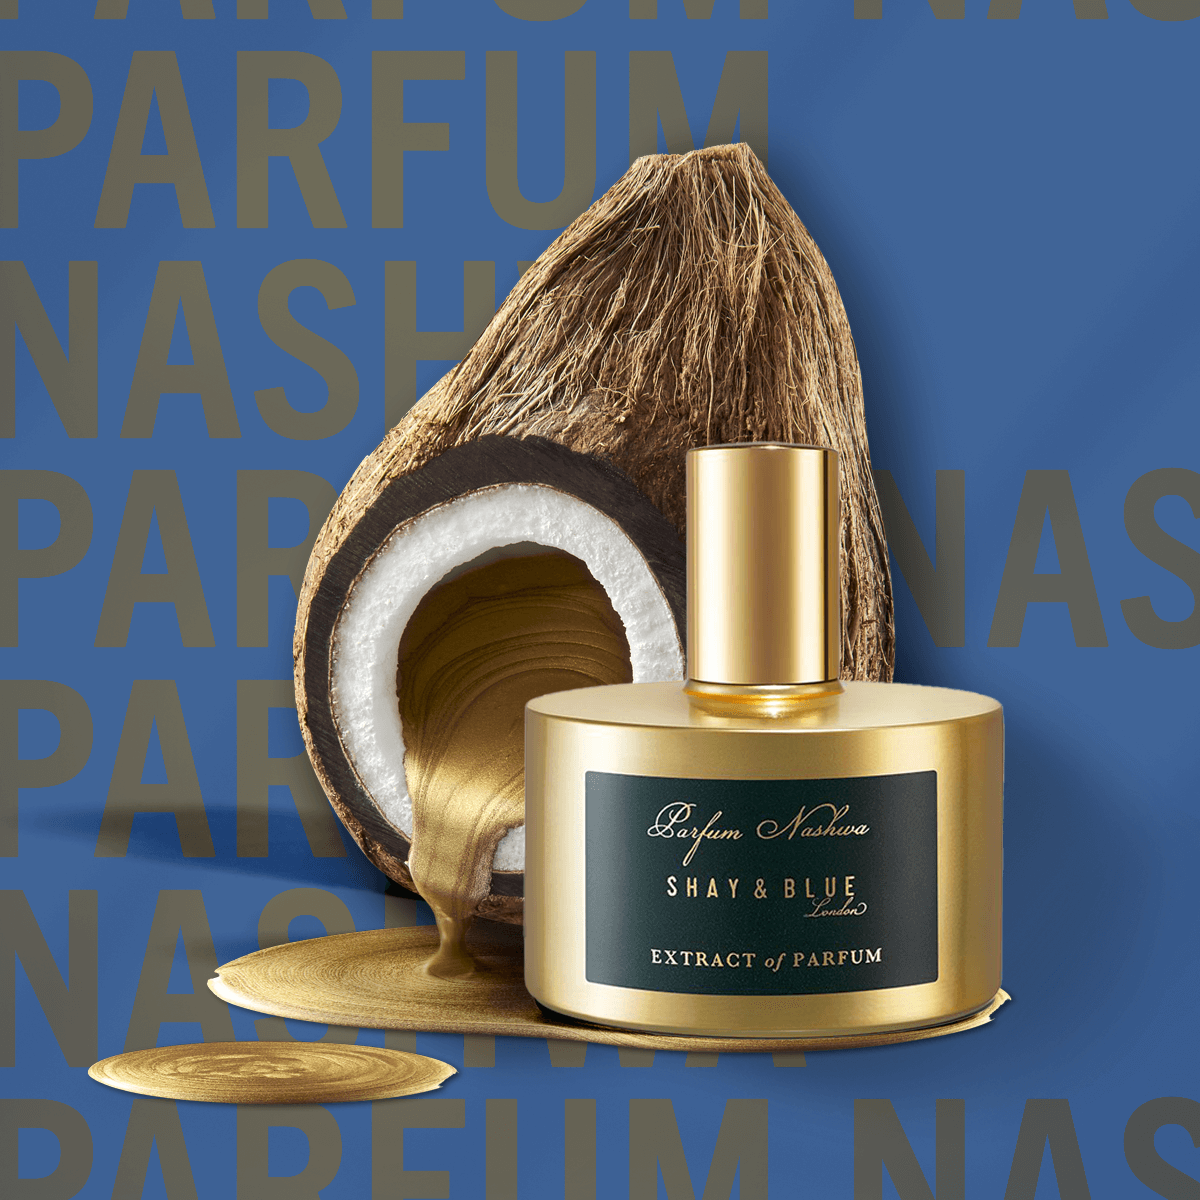 Parfum Nashwa Extract of Parfum 60ml | Rijke noten van cacao noir en kokos smelten over donker oud hout. | Schone geur voor mannen en vrouwen | Shay & Blue